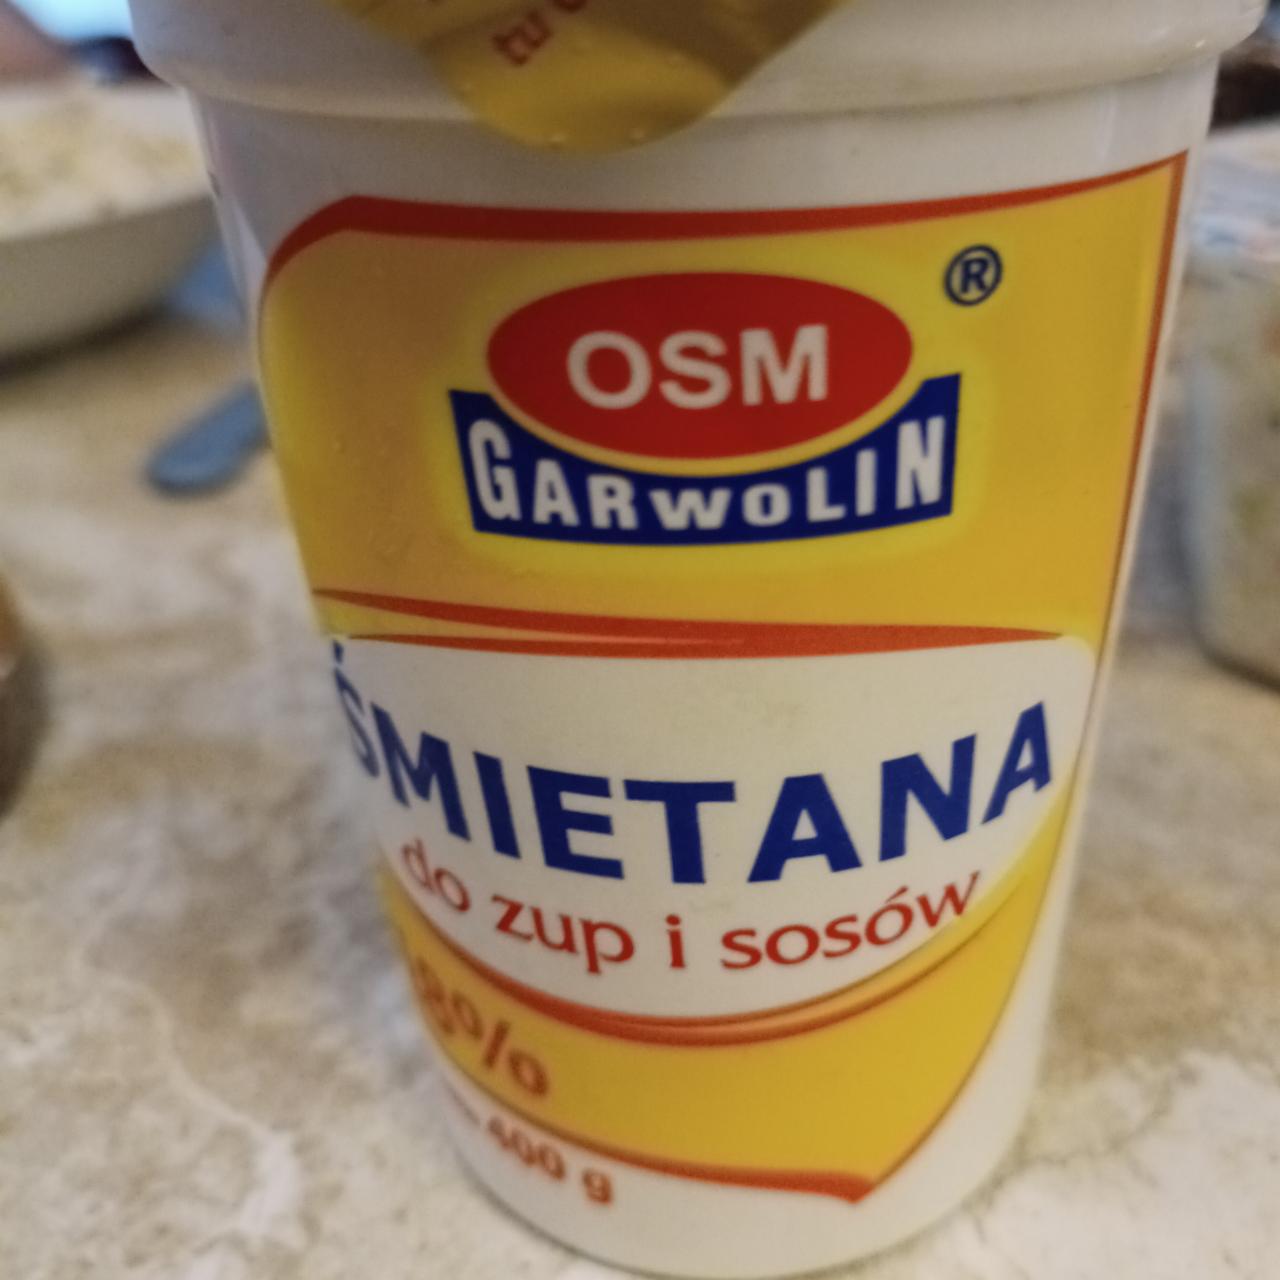 Fotografie - Śmietana do zup i sosów 18% OSM Garwolin